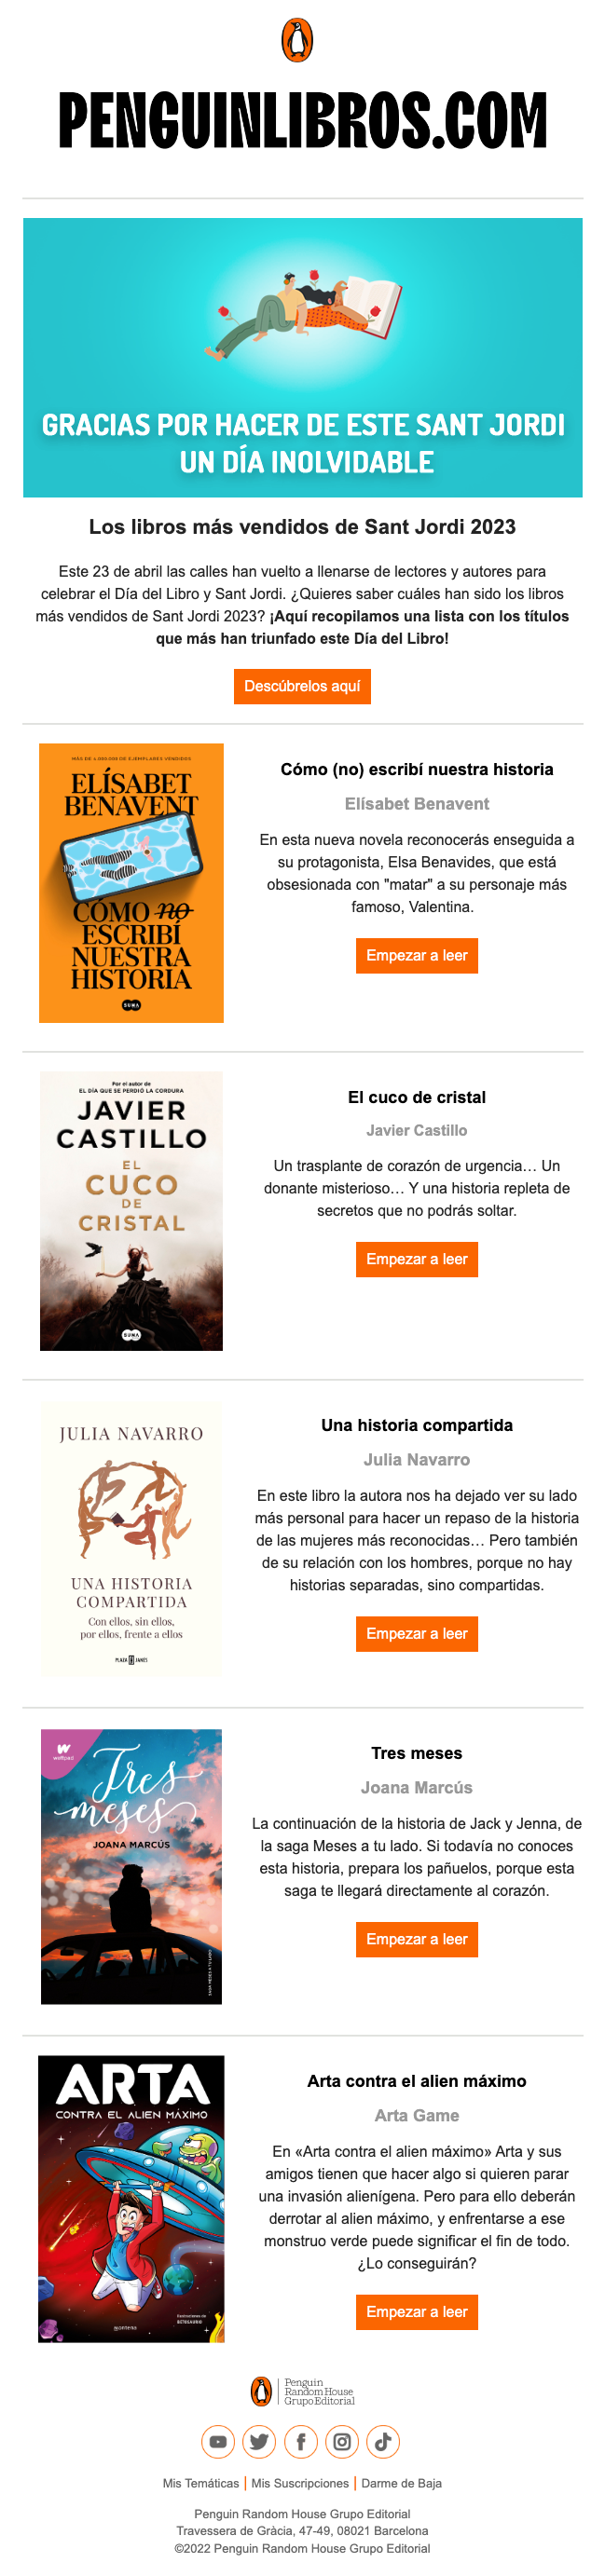 Un correo electrónico de Penguin con los cinco libros más vendidos en Sant Jordi.